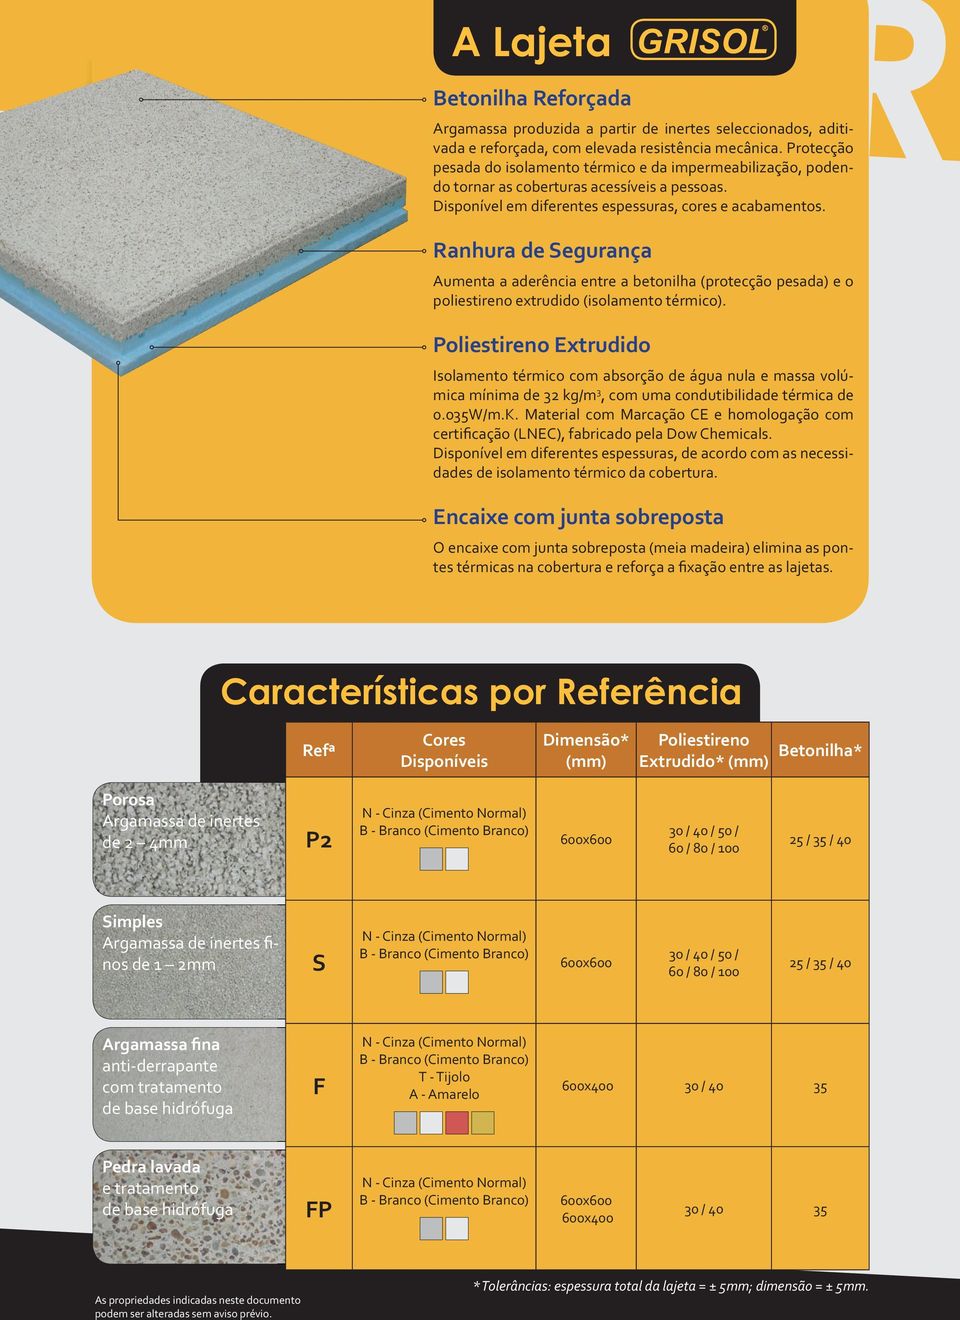 Ranhura de Segurança Aumenta a aderência entre a betonilha (protecção pesada) e o poliestireno extrudido (isolamento térmico).